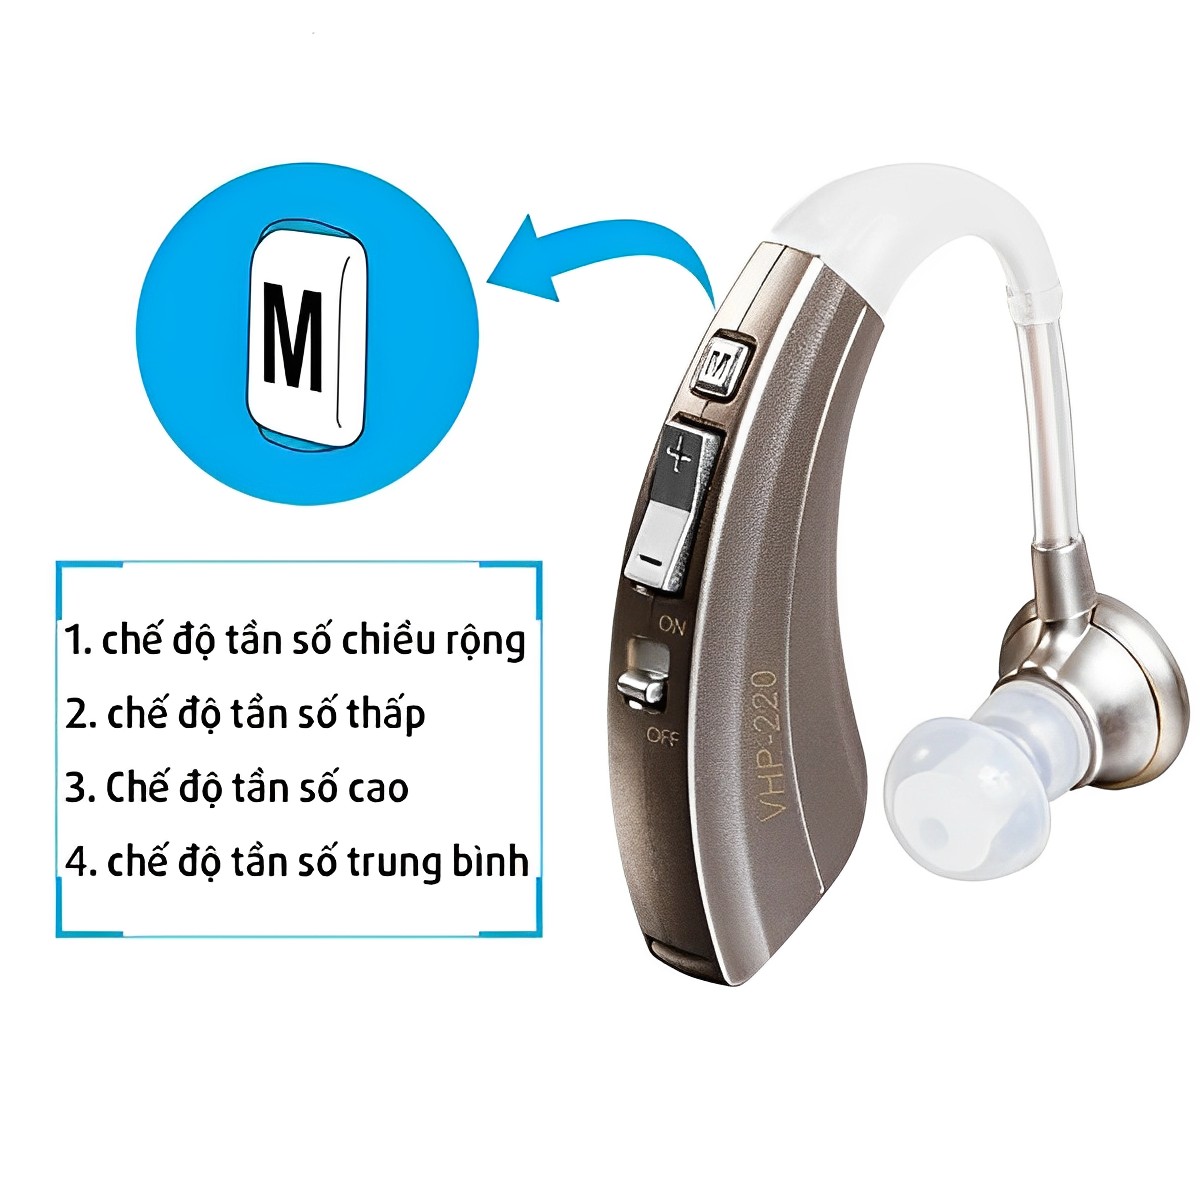 Máy trợ thính không dây cho người già VHP 220,tai nghe trợ thính,lọc tiếng ồn và khuếch đại âm thanh lớn hỗ trợ cho những người bị điếc nặng hay thính lực suy giảm ở mức độ nặng